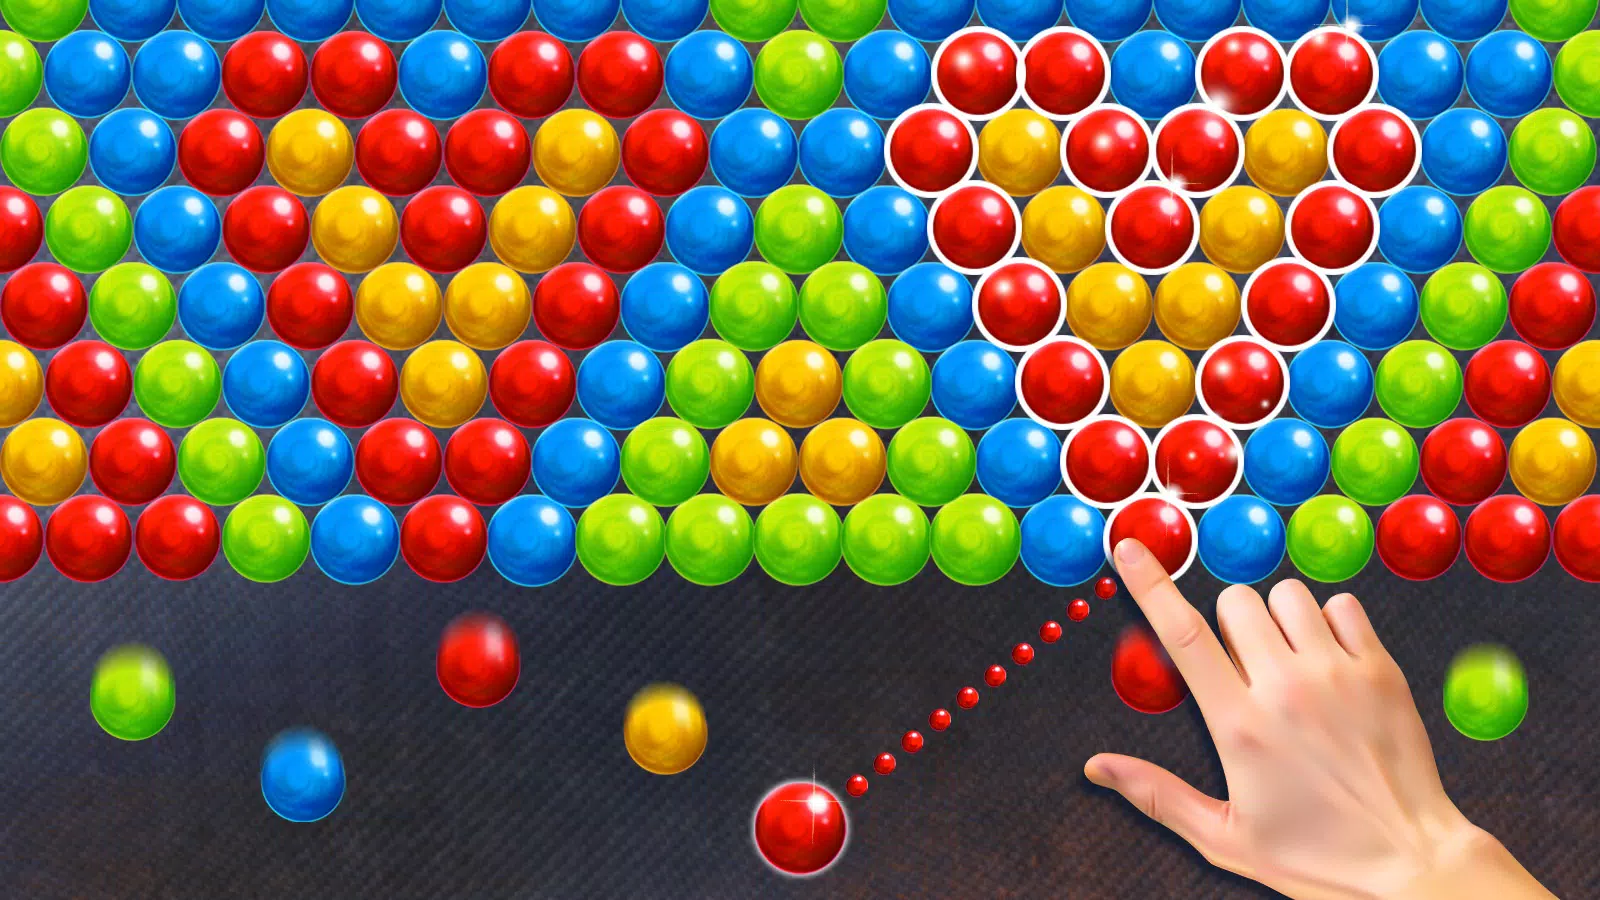 Bubble Shooter Pop Bubbles MOD APK v9.3.26 (Unlocked) - Jojoy